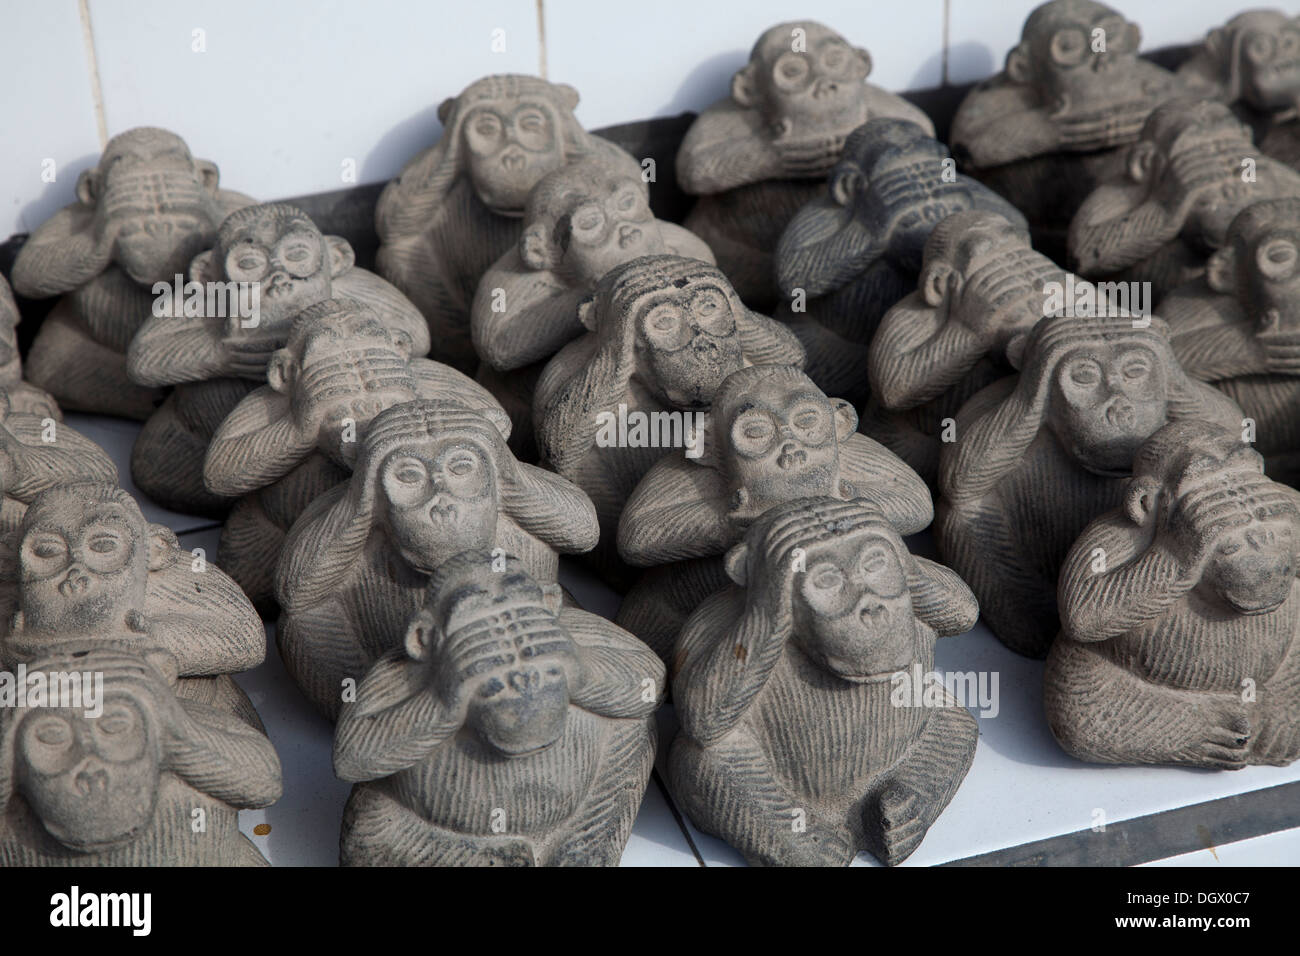 Graue Affen hören sehen Gespräch sagen Geschenk Dekoration Spielzeugladen Bali Indonesien Souvenirs kaufen verkaufen Touristen hören sagen siehe Stein sprechen sprechen Stockfoto